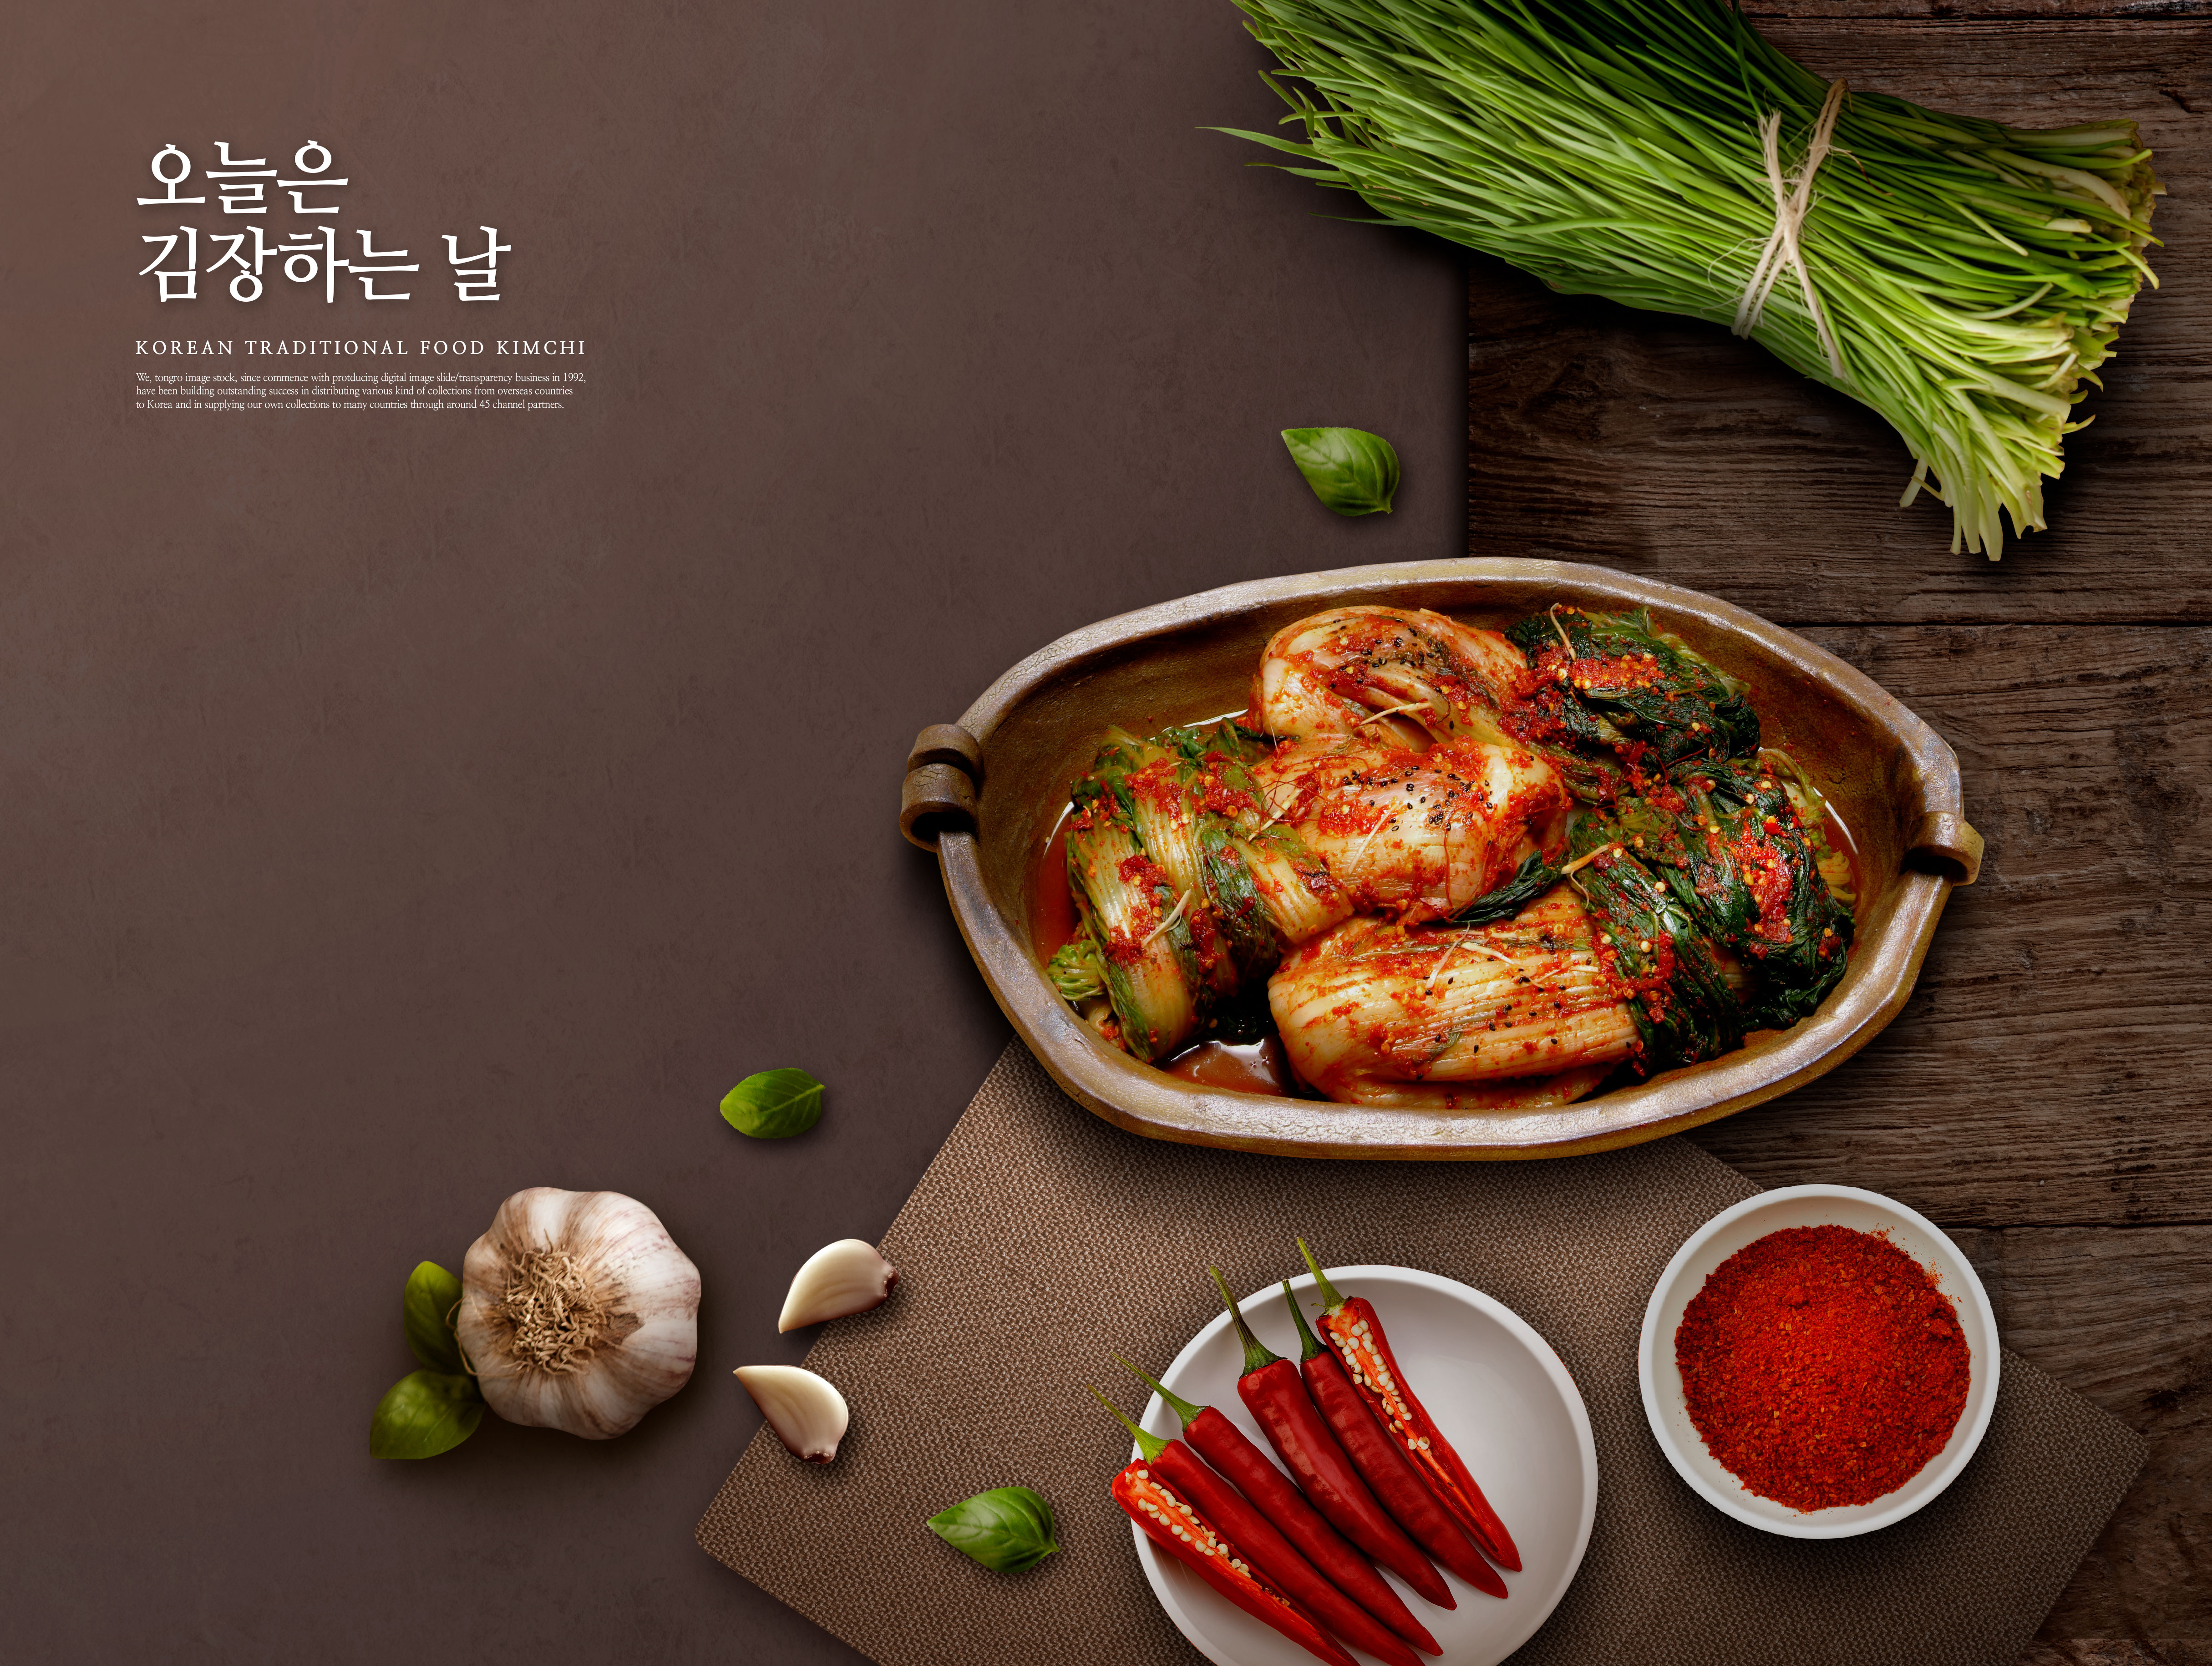 韩国传统料理泡菜食品海报设计模板插图